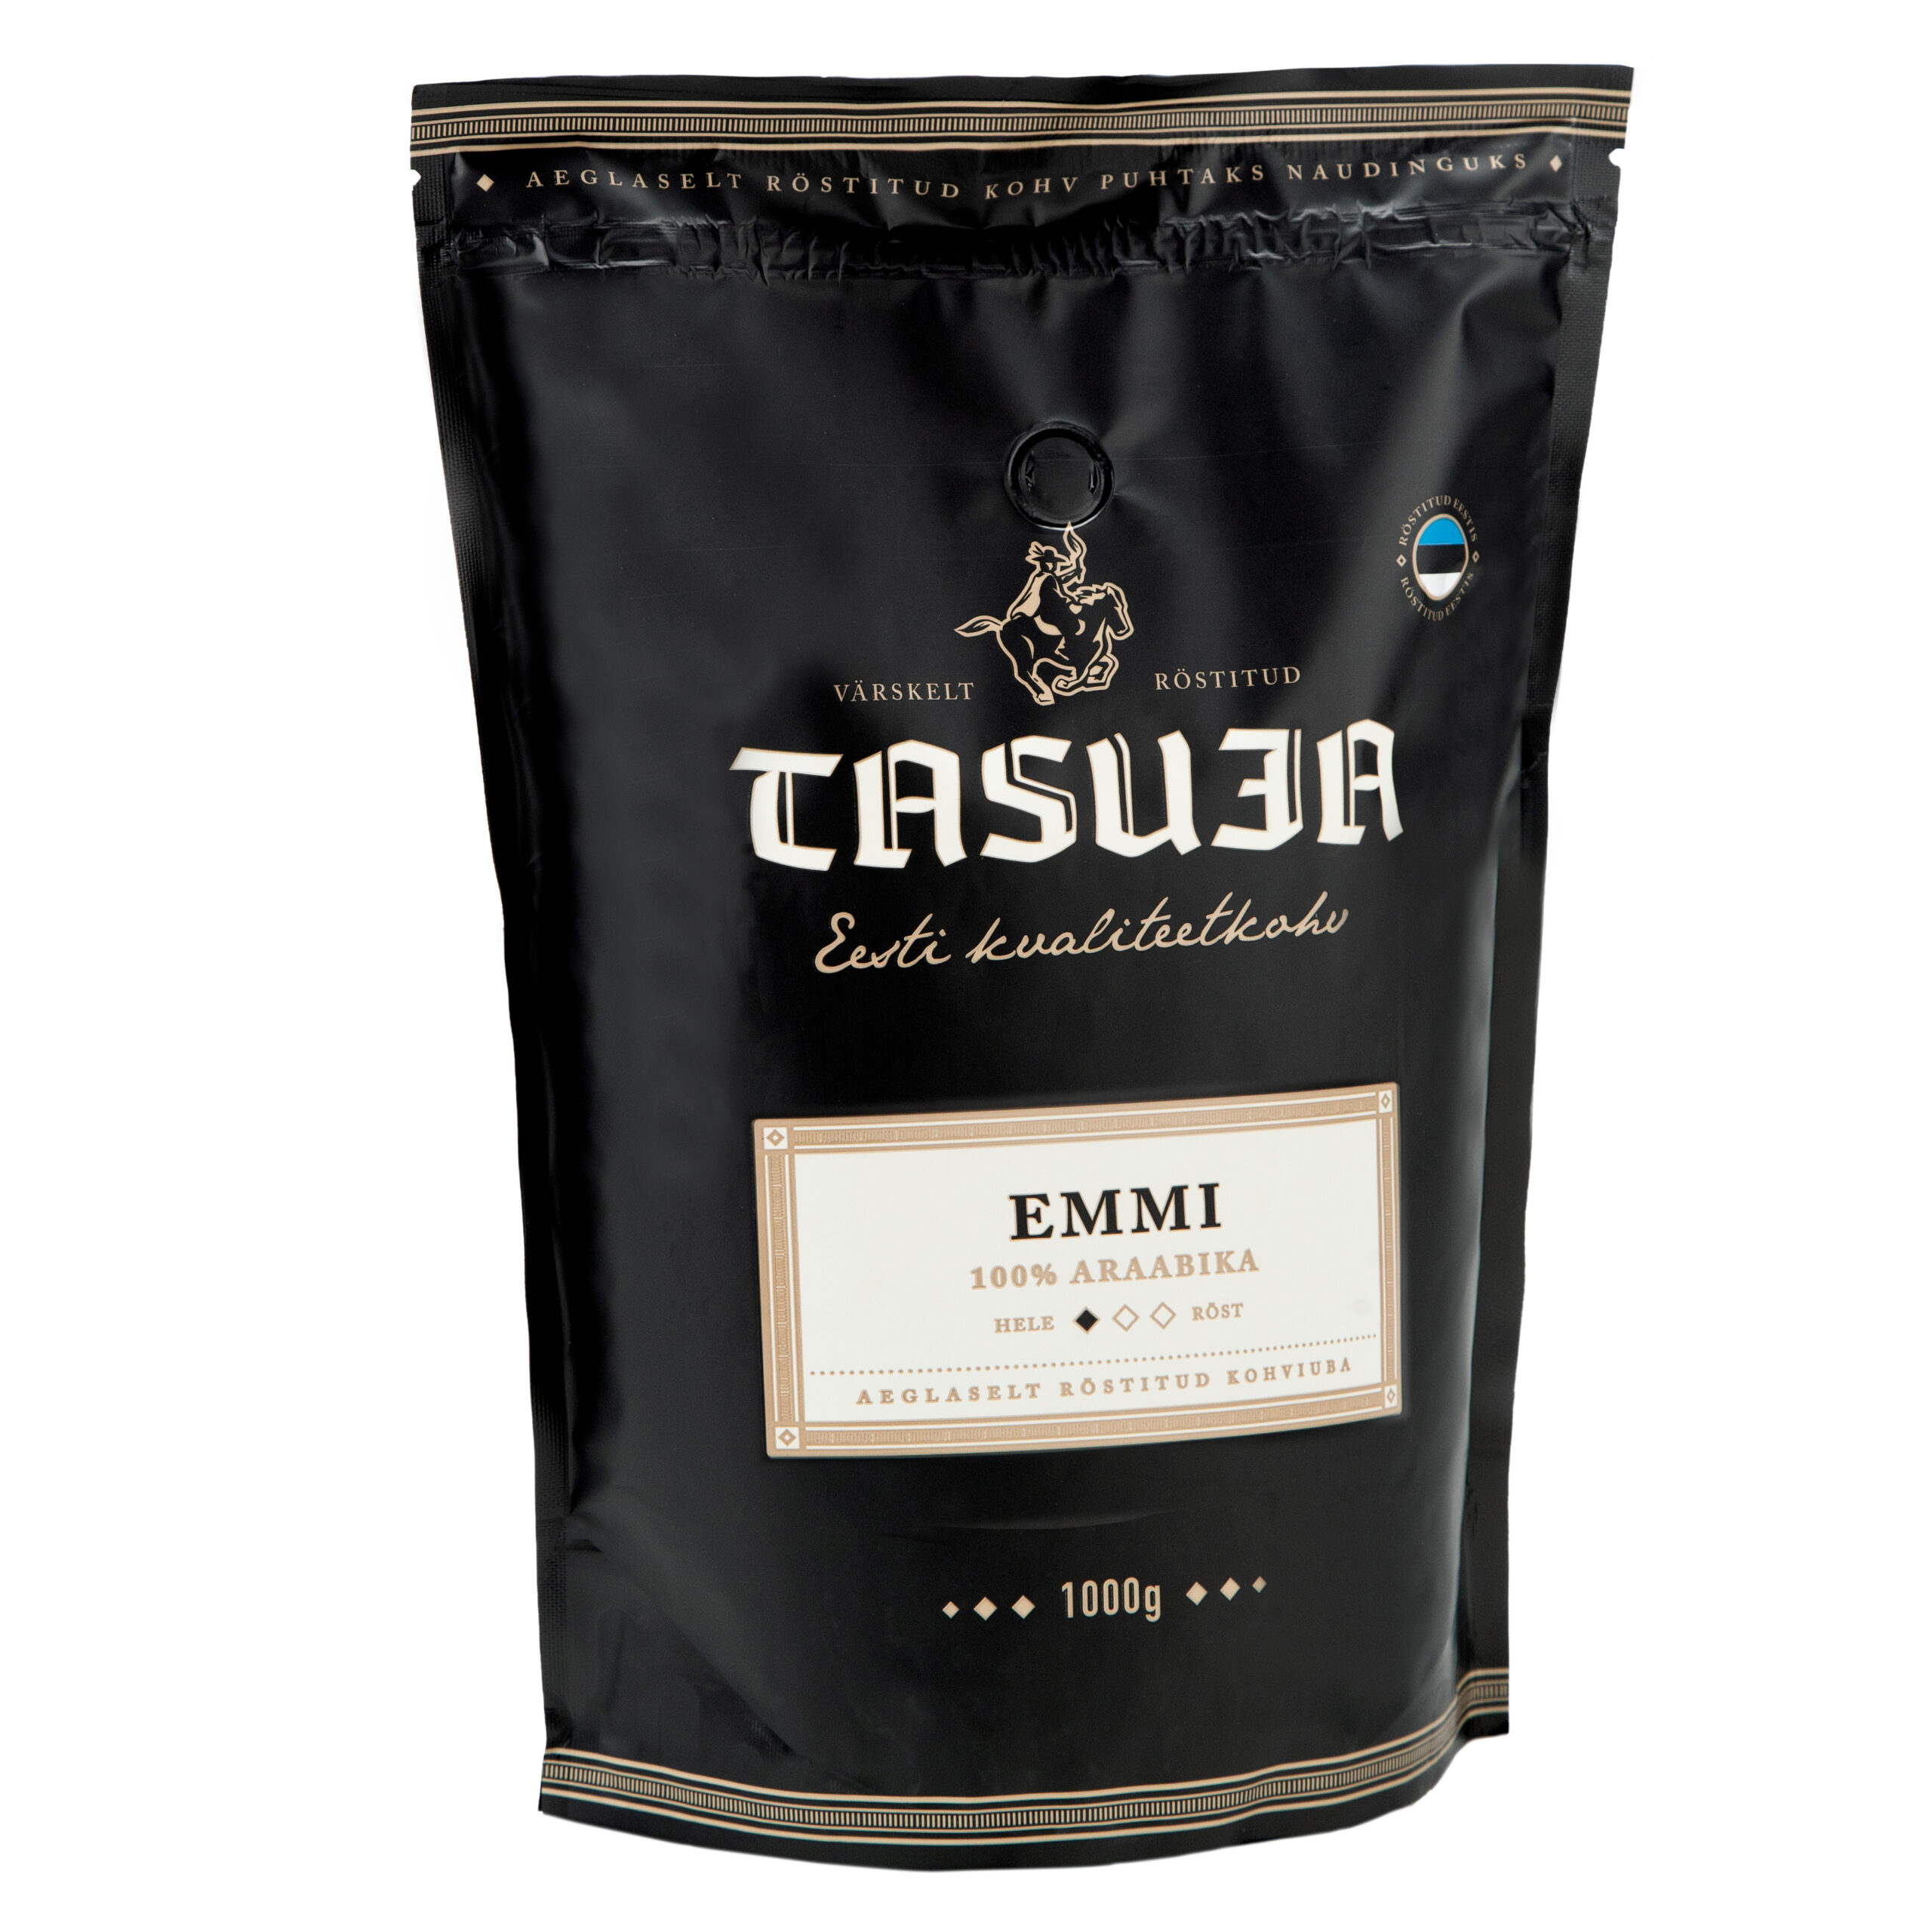 Värskelt röstitud kohvioad Tasuja Emmi. Kohv toob endas esile kerged jasmiinised maitsenüansid.